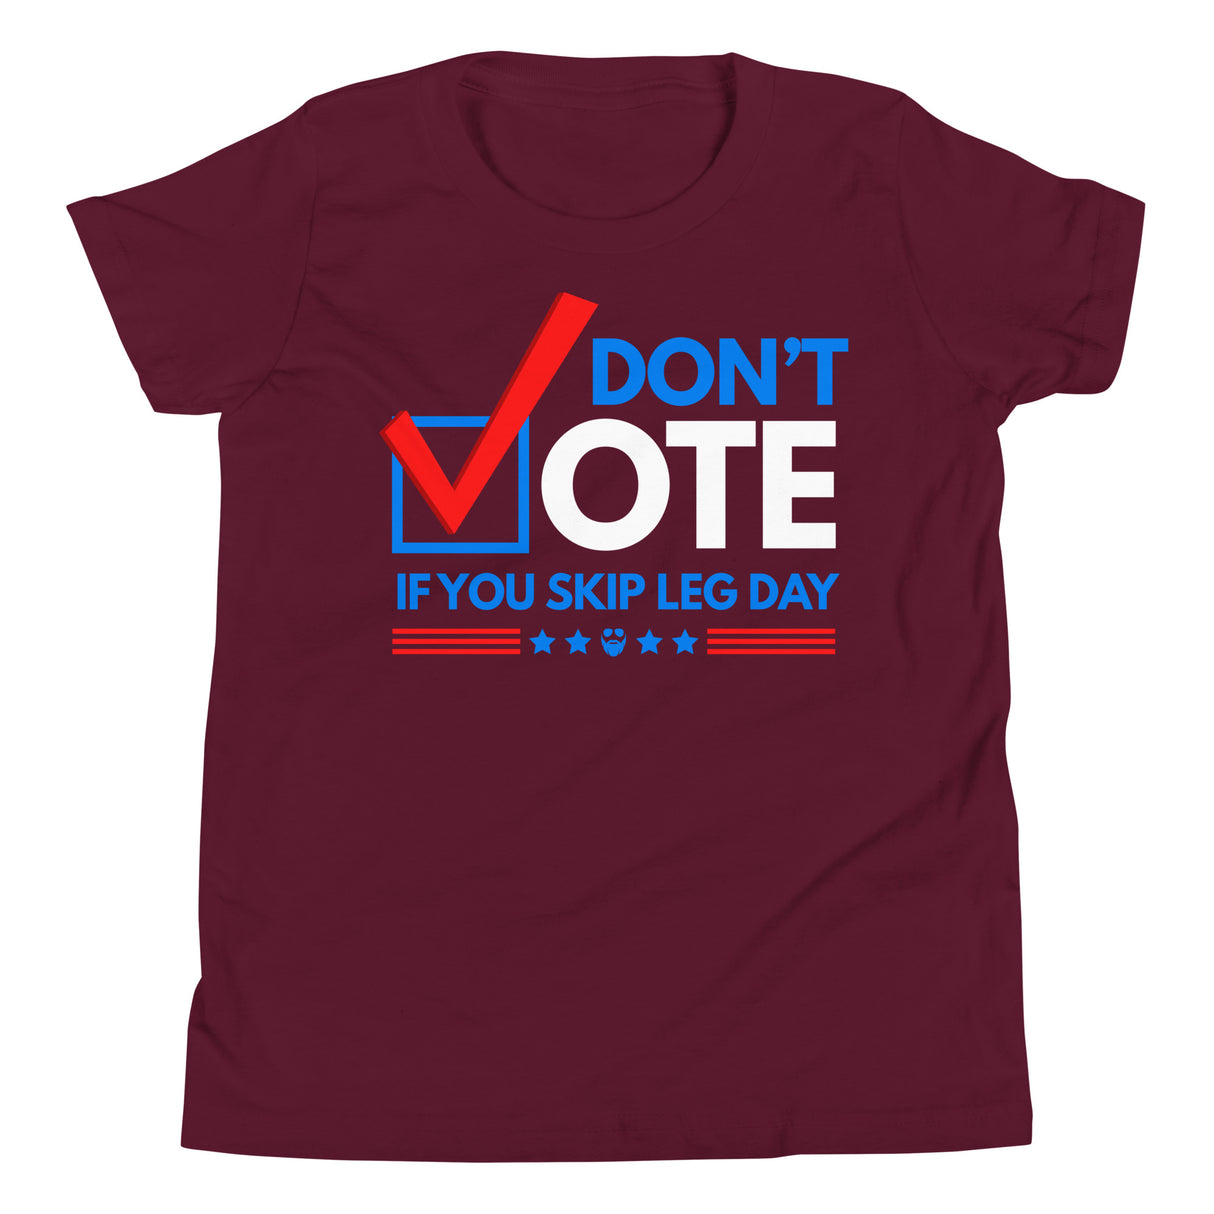 Don't Vote If You Skip Leg Day Kids T-Shirt